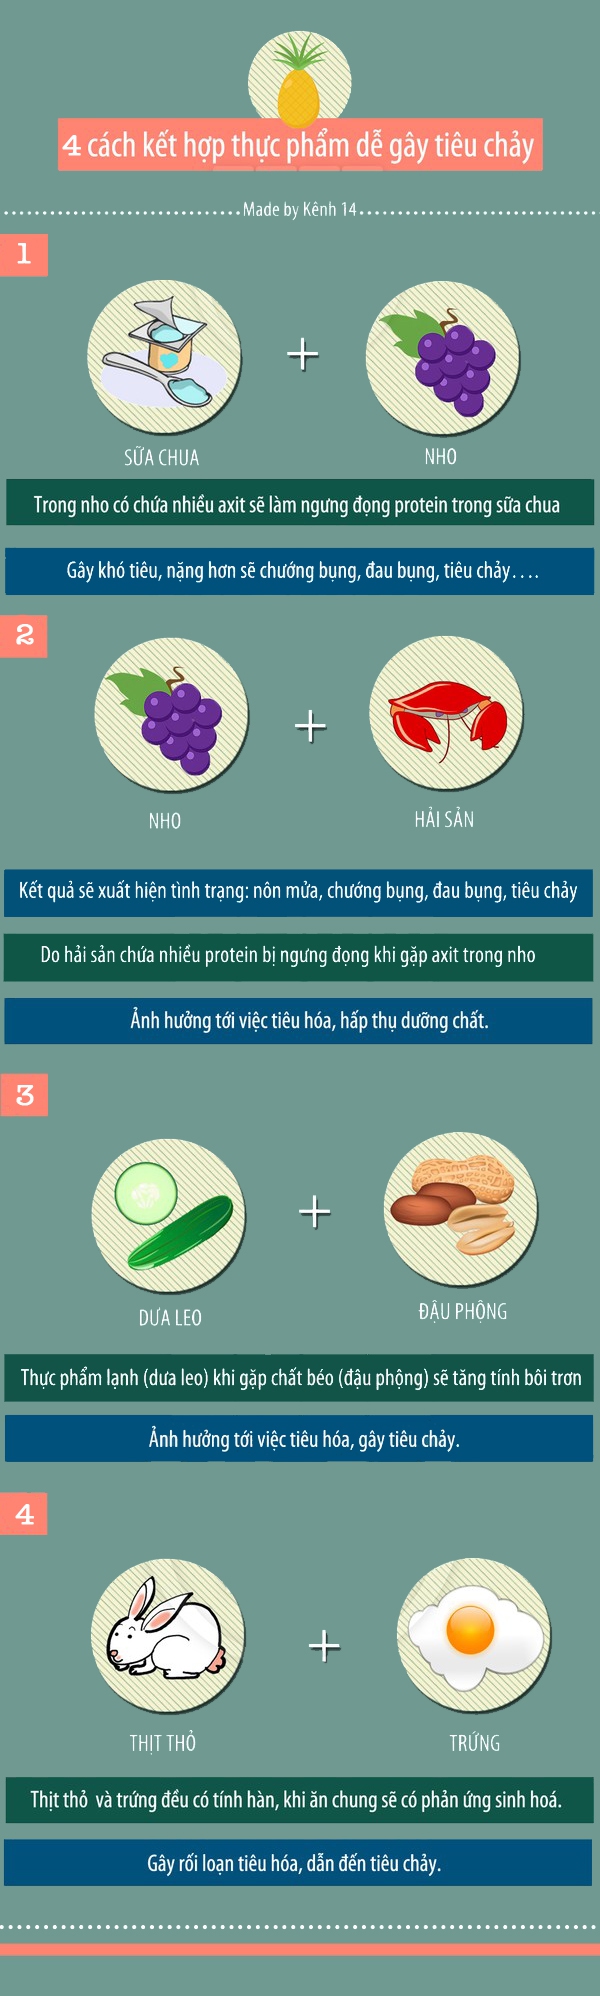 4 cách kết hợp thực phẩm dễ gây tiêu chảy 1